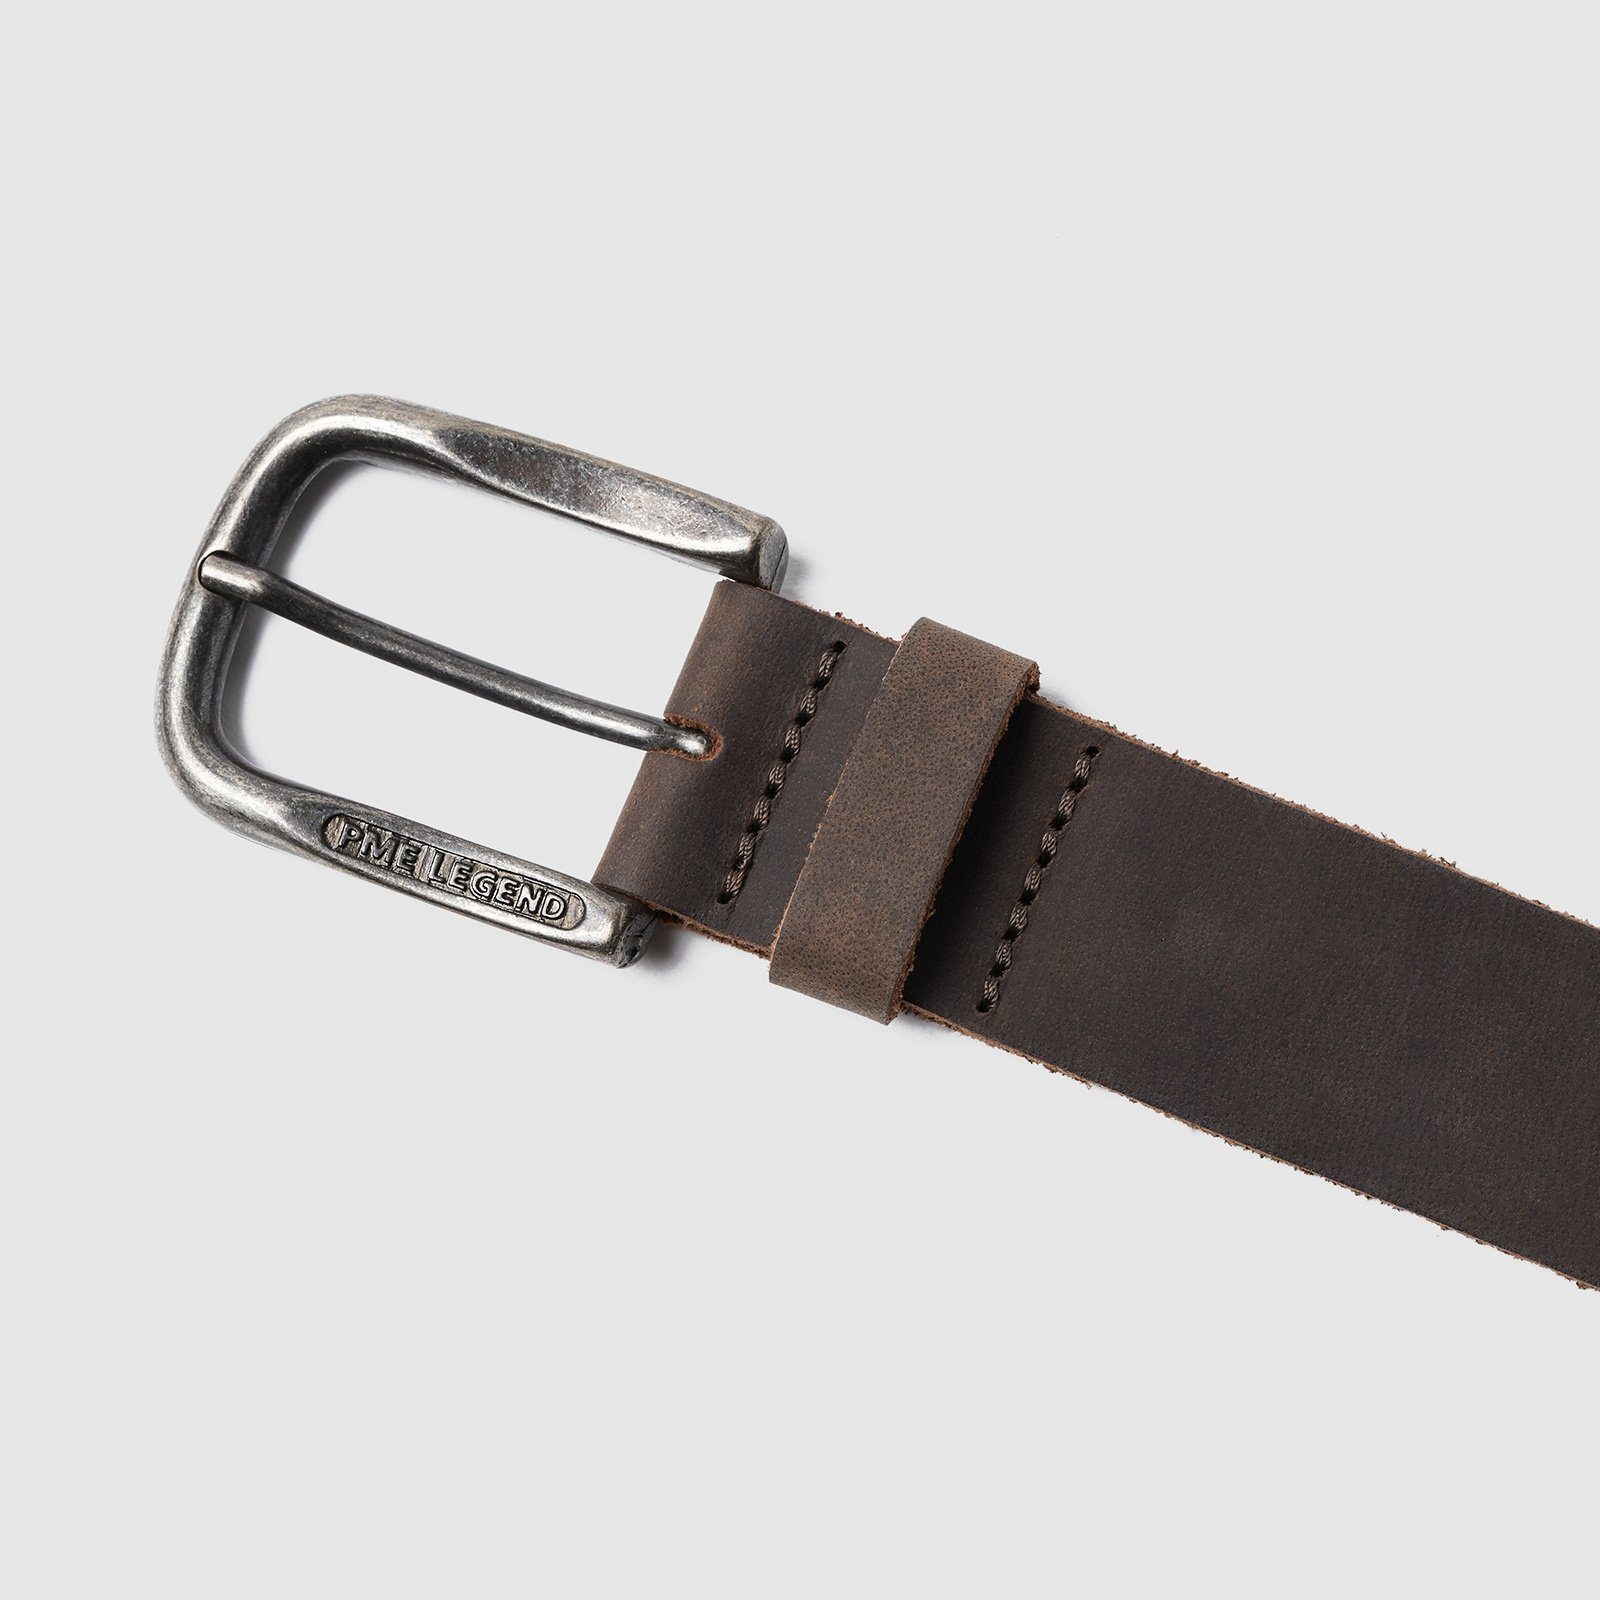 Ledergürtel LEGEND belt d.brown Leather Belt PME